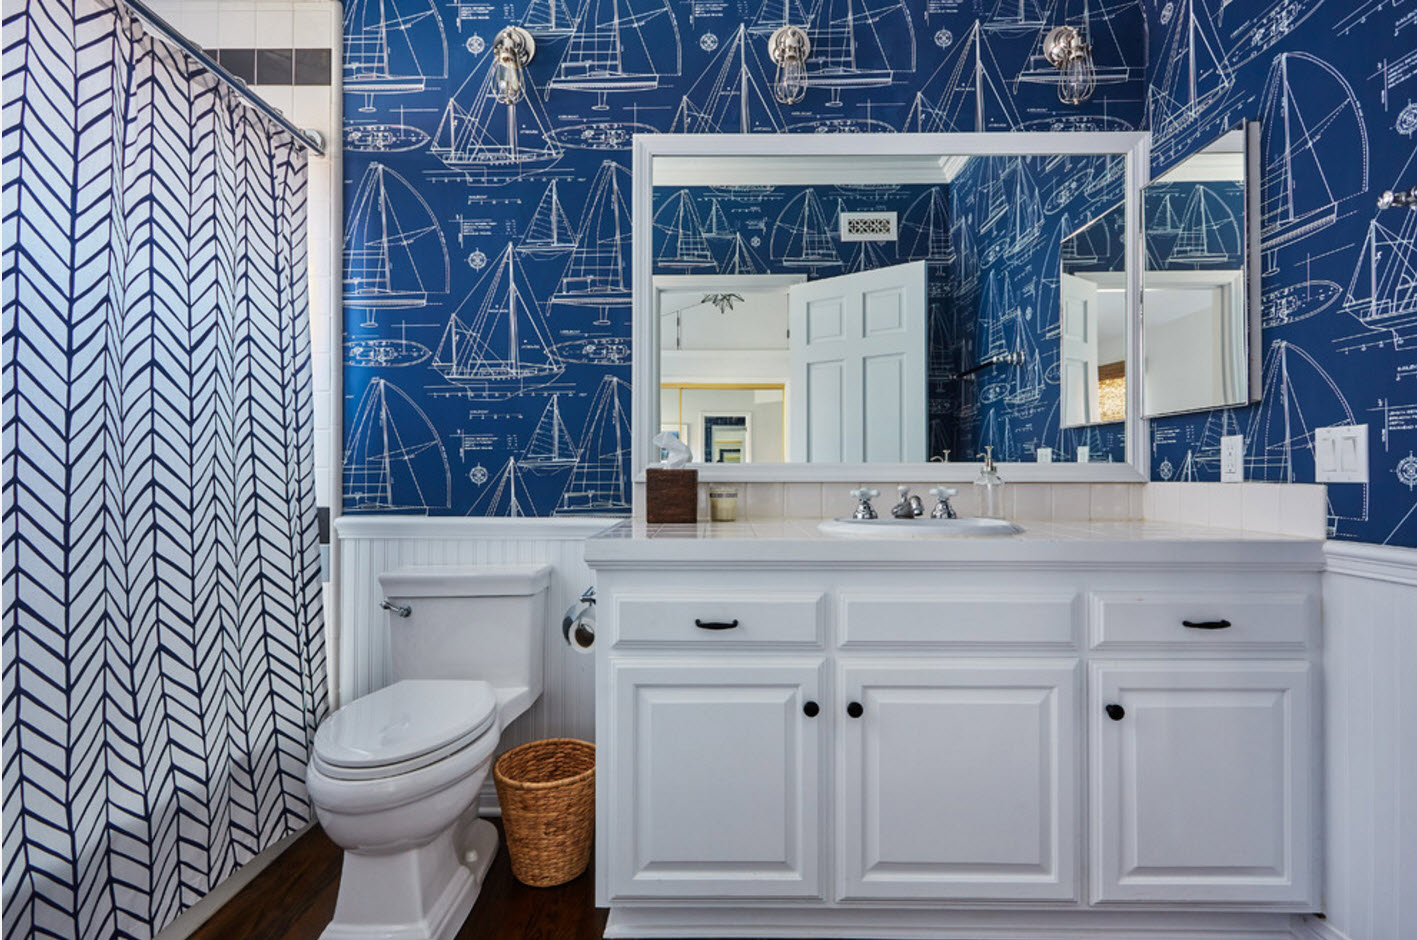 bath design in blue and white